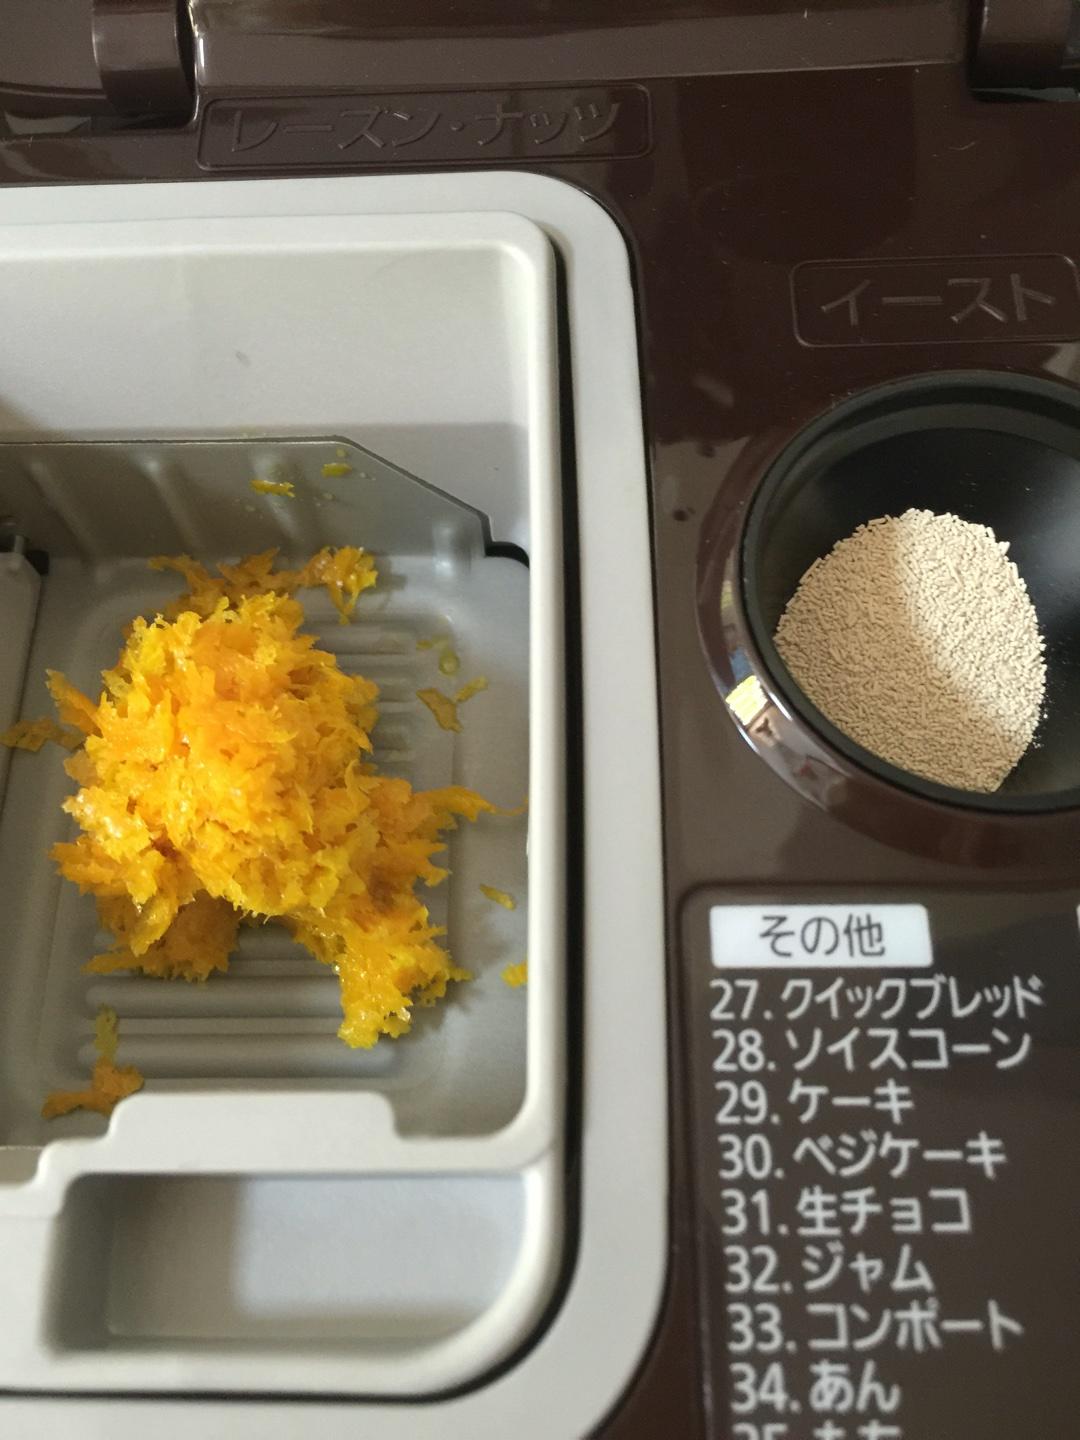 橙香三文治面包
松下面包机SD-BMT1001的做法 步骤7